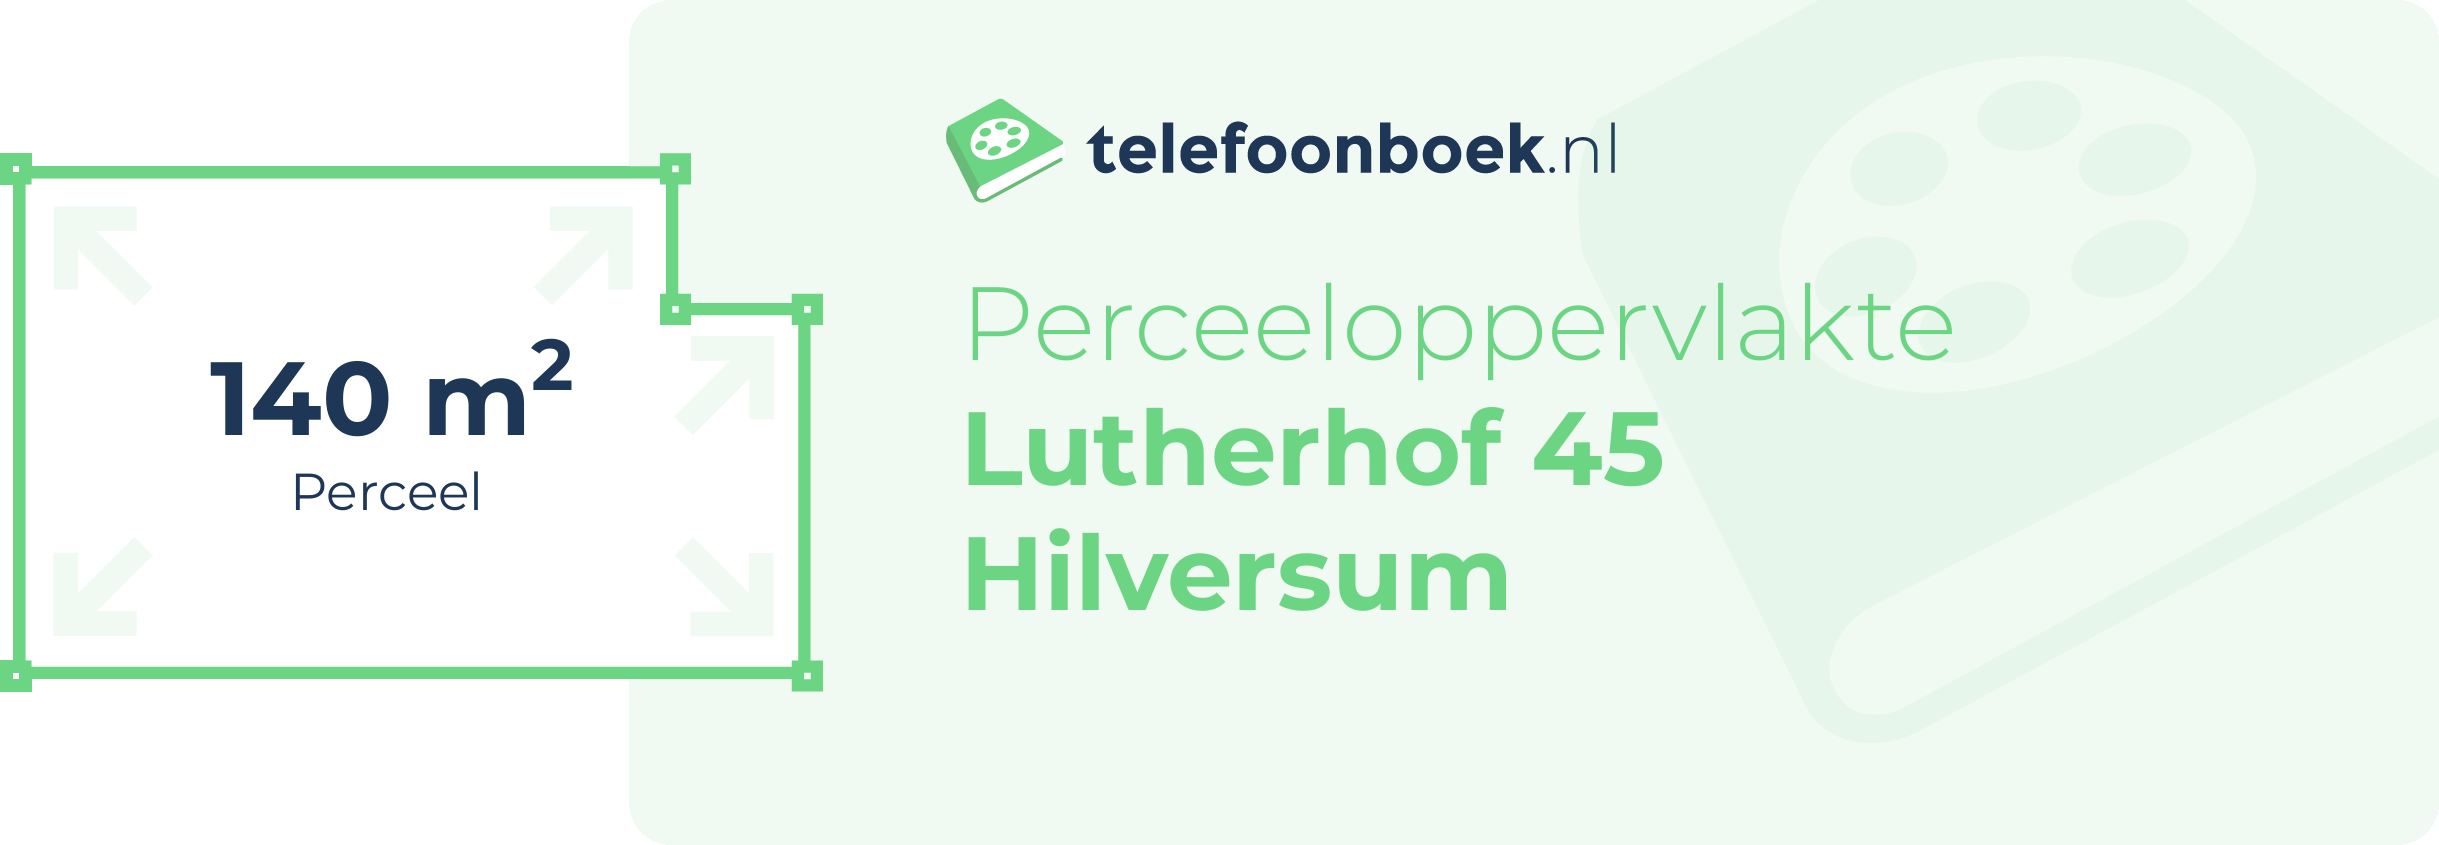 Perceeloppervlakte Lutherhof 45 Hilversum